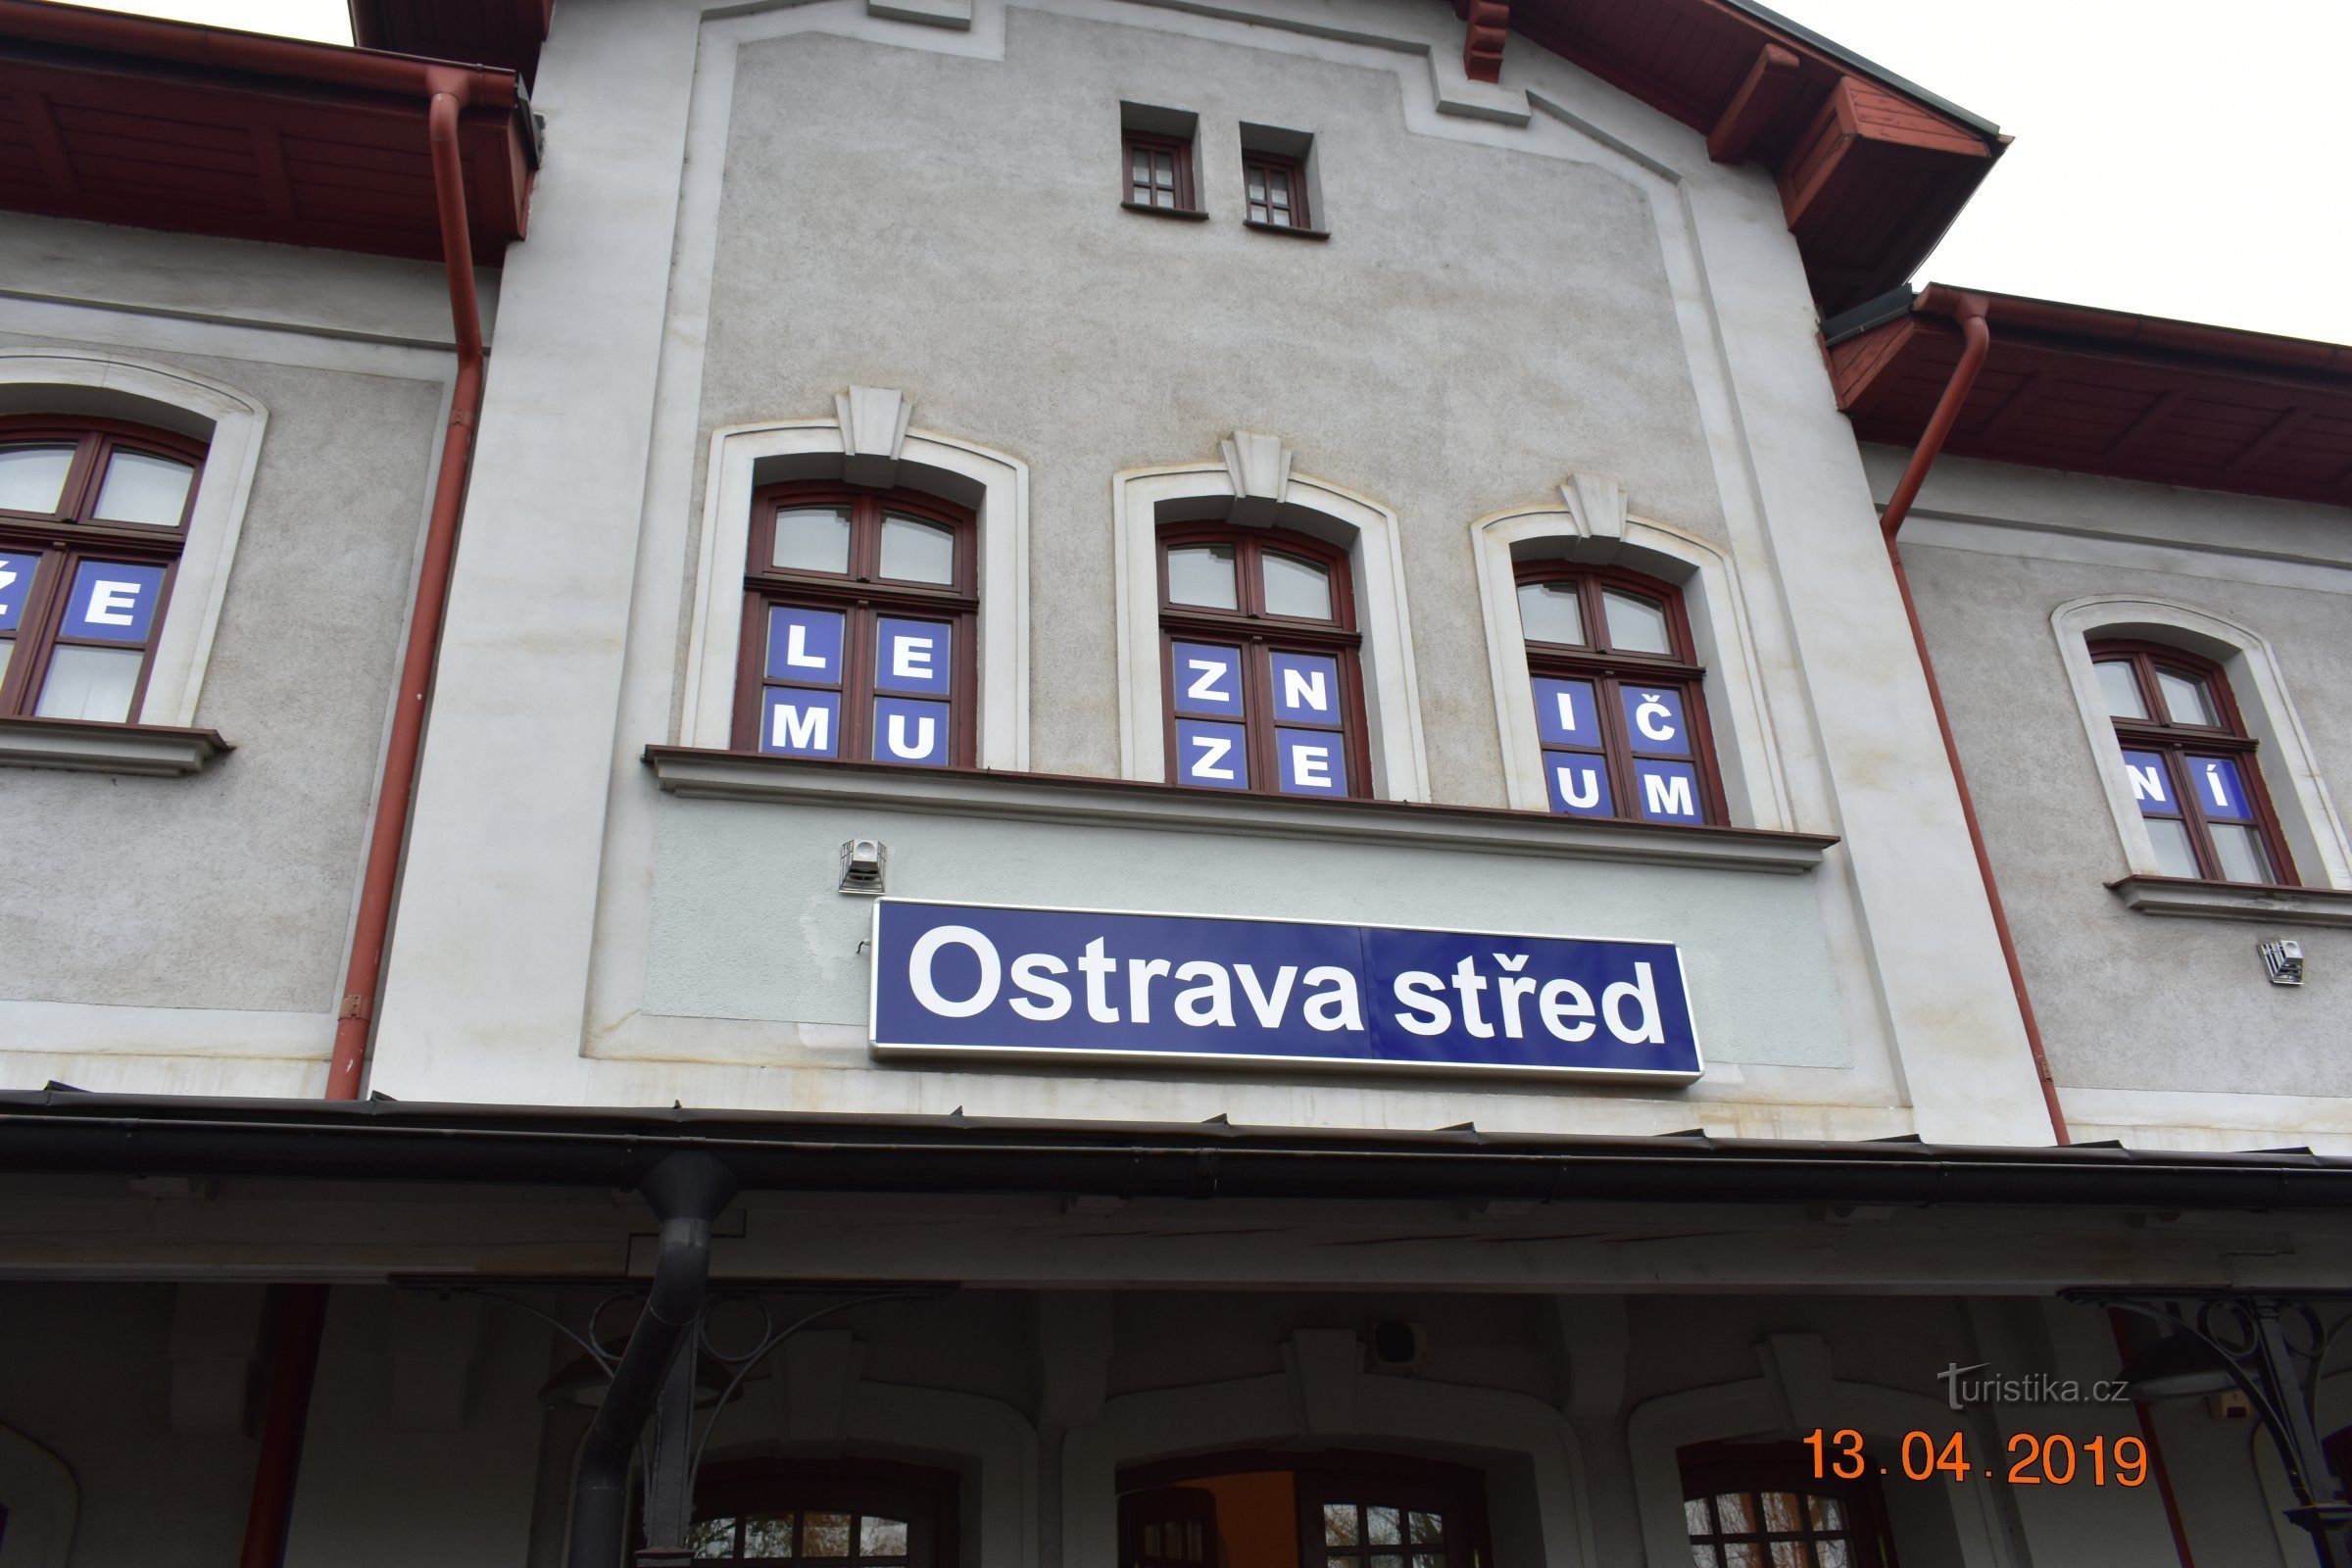 Mit dem Schnellzug Báňský entlang der Abstellgleise des Bezirks Ostrava-Karvinsky